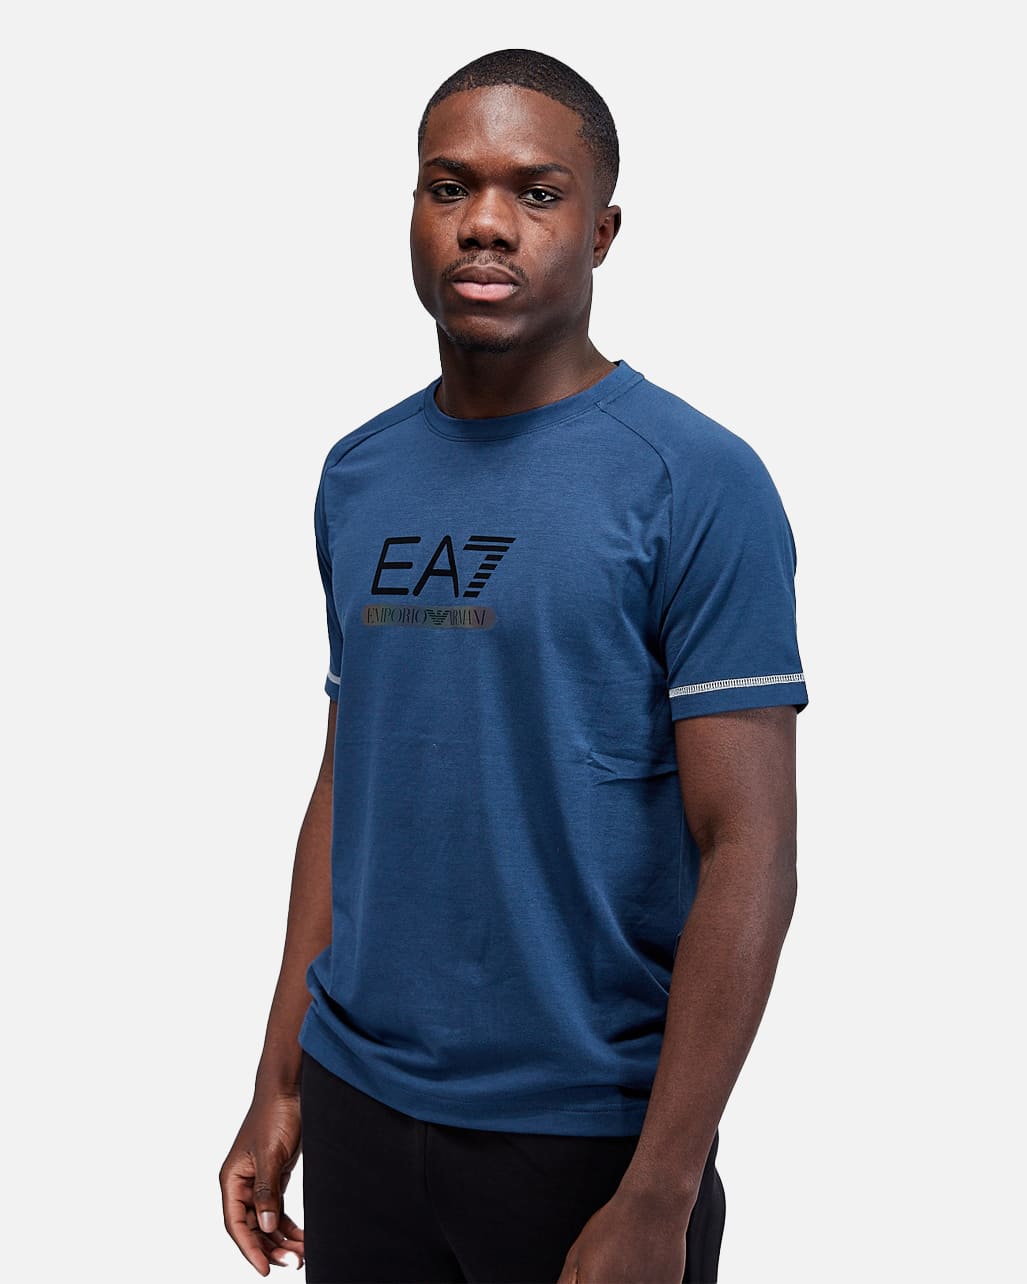 Surichinmoi ar Almindeligt Emporio Armani EA7 Tee Ventus 7 T-shirt - Blue – Footkorner